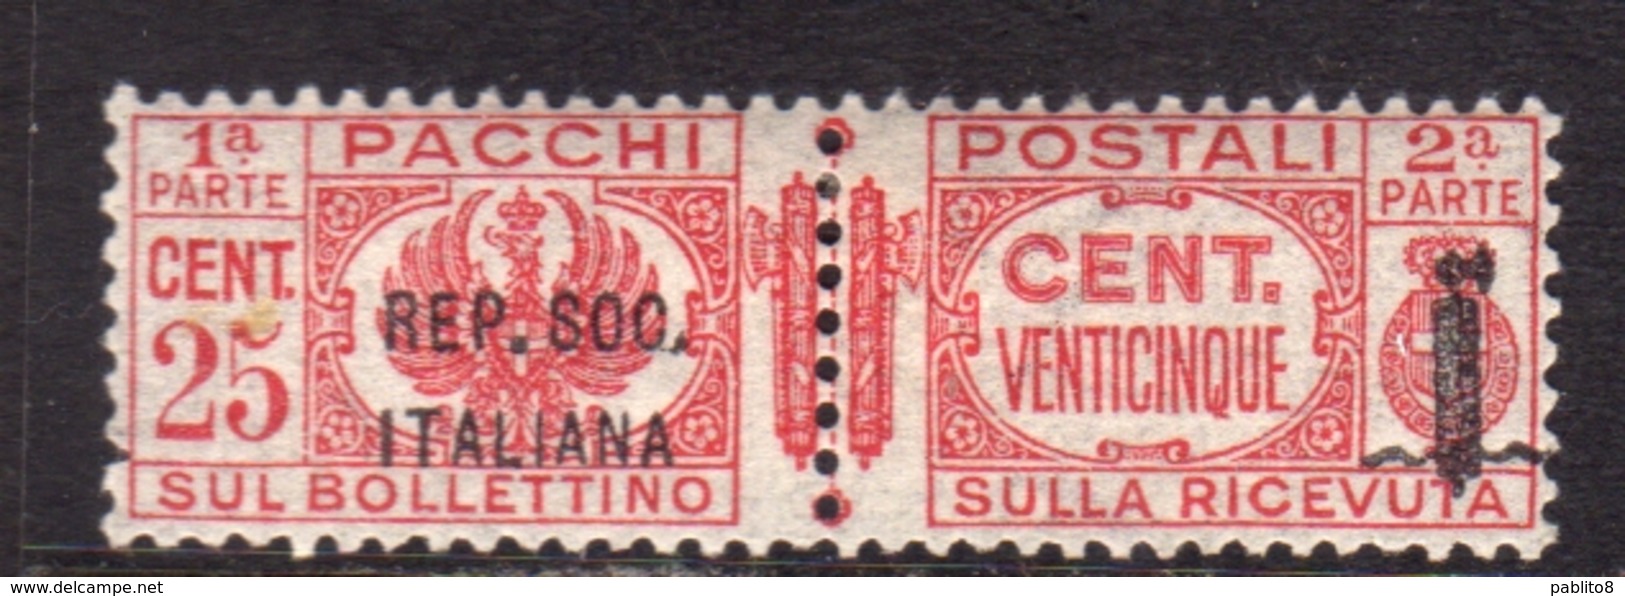 ITALIA REGNO ITALY KINGDOM 1944 RSI REPUBBLICA SOCIALE ITALIANA PACCHI POSTALI PARCEL POST FASCIO CENT. 25c MNH - Colis-postaux